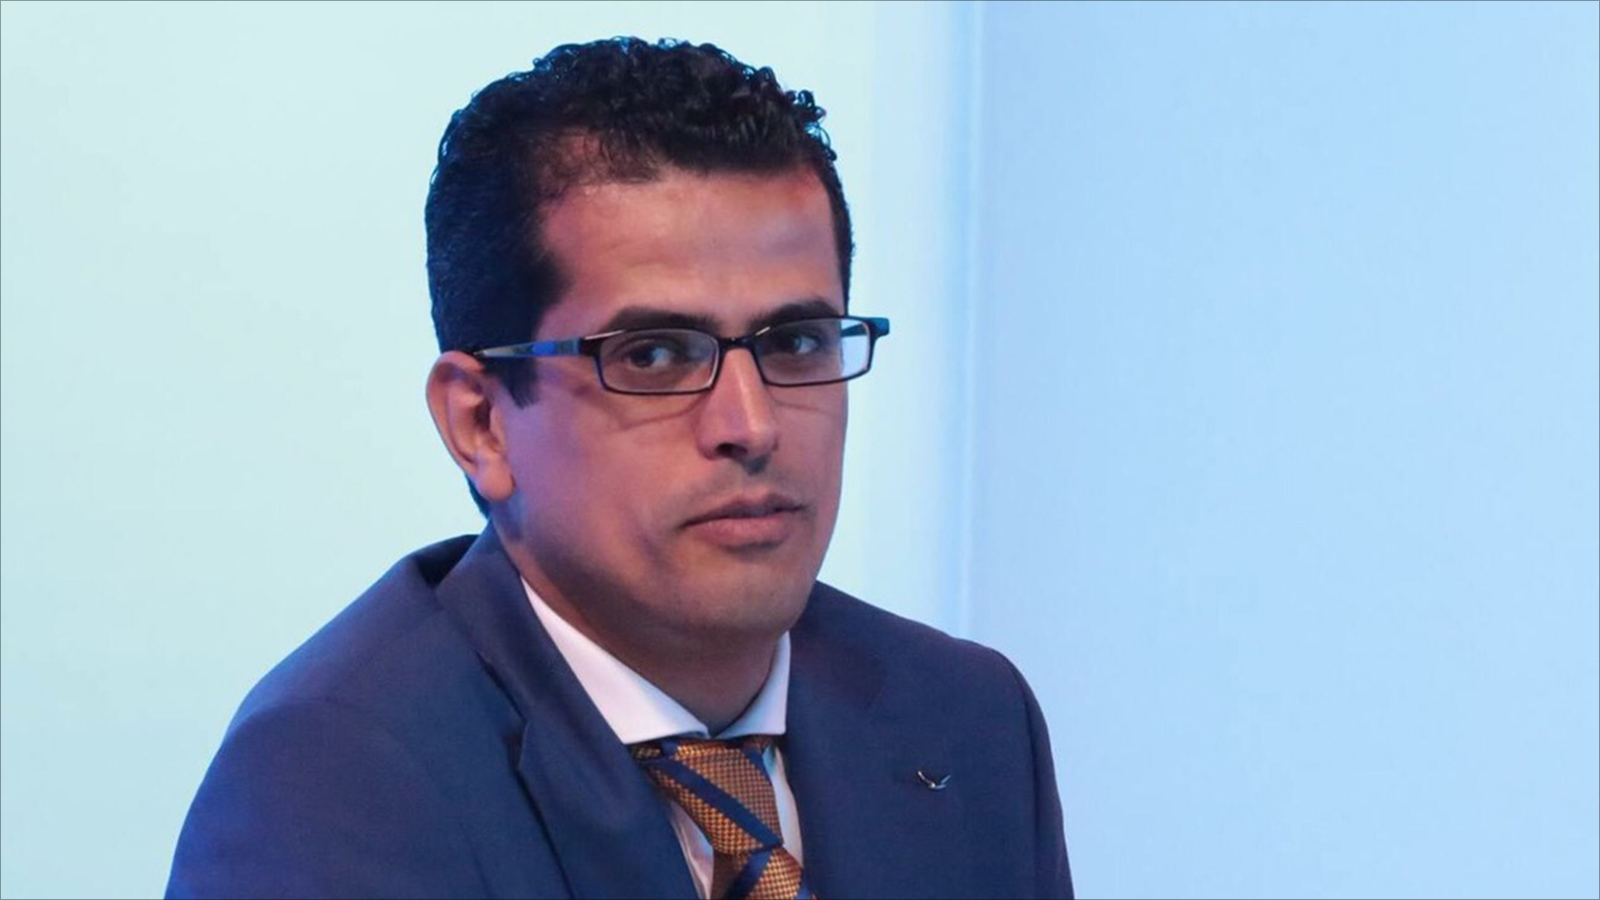 ‪ارتيمه: مصر تعاملت بازدواجية مع الملف الليبي‬ (الجزيرة)